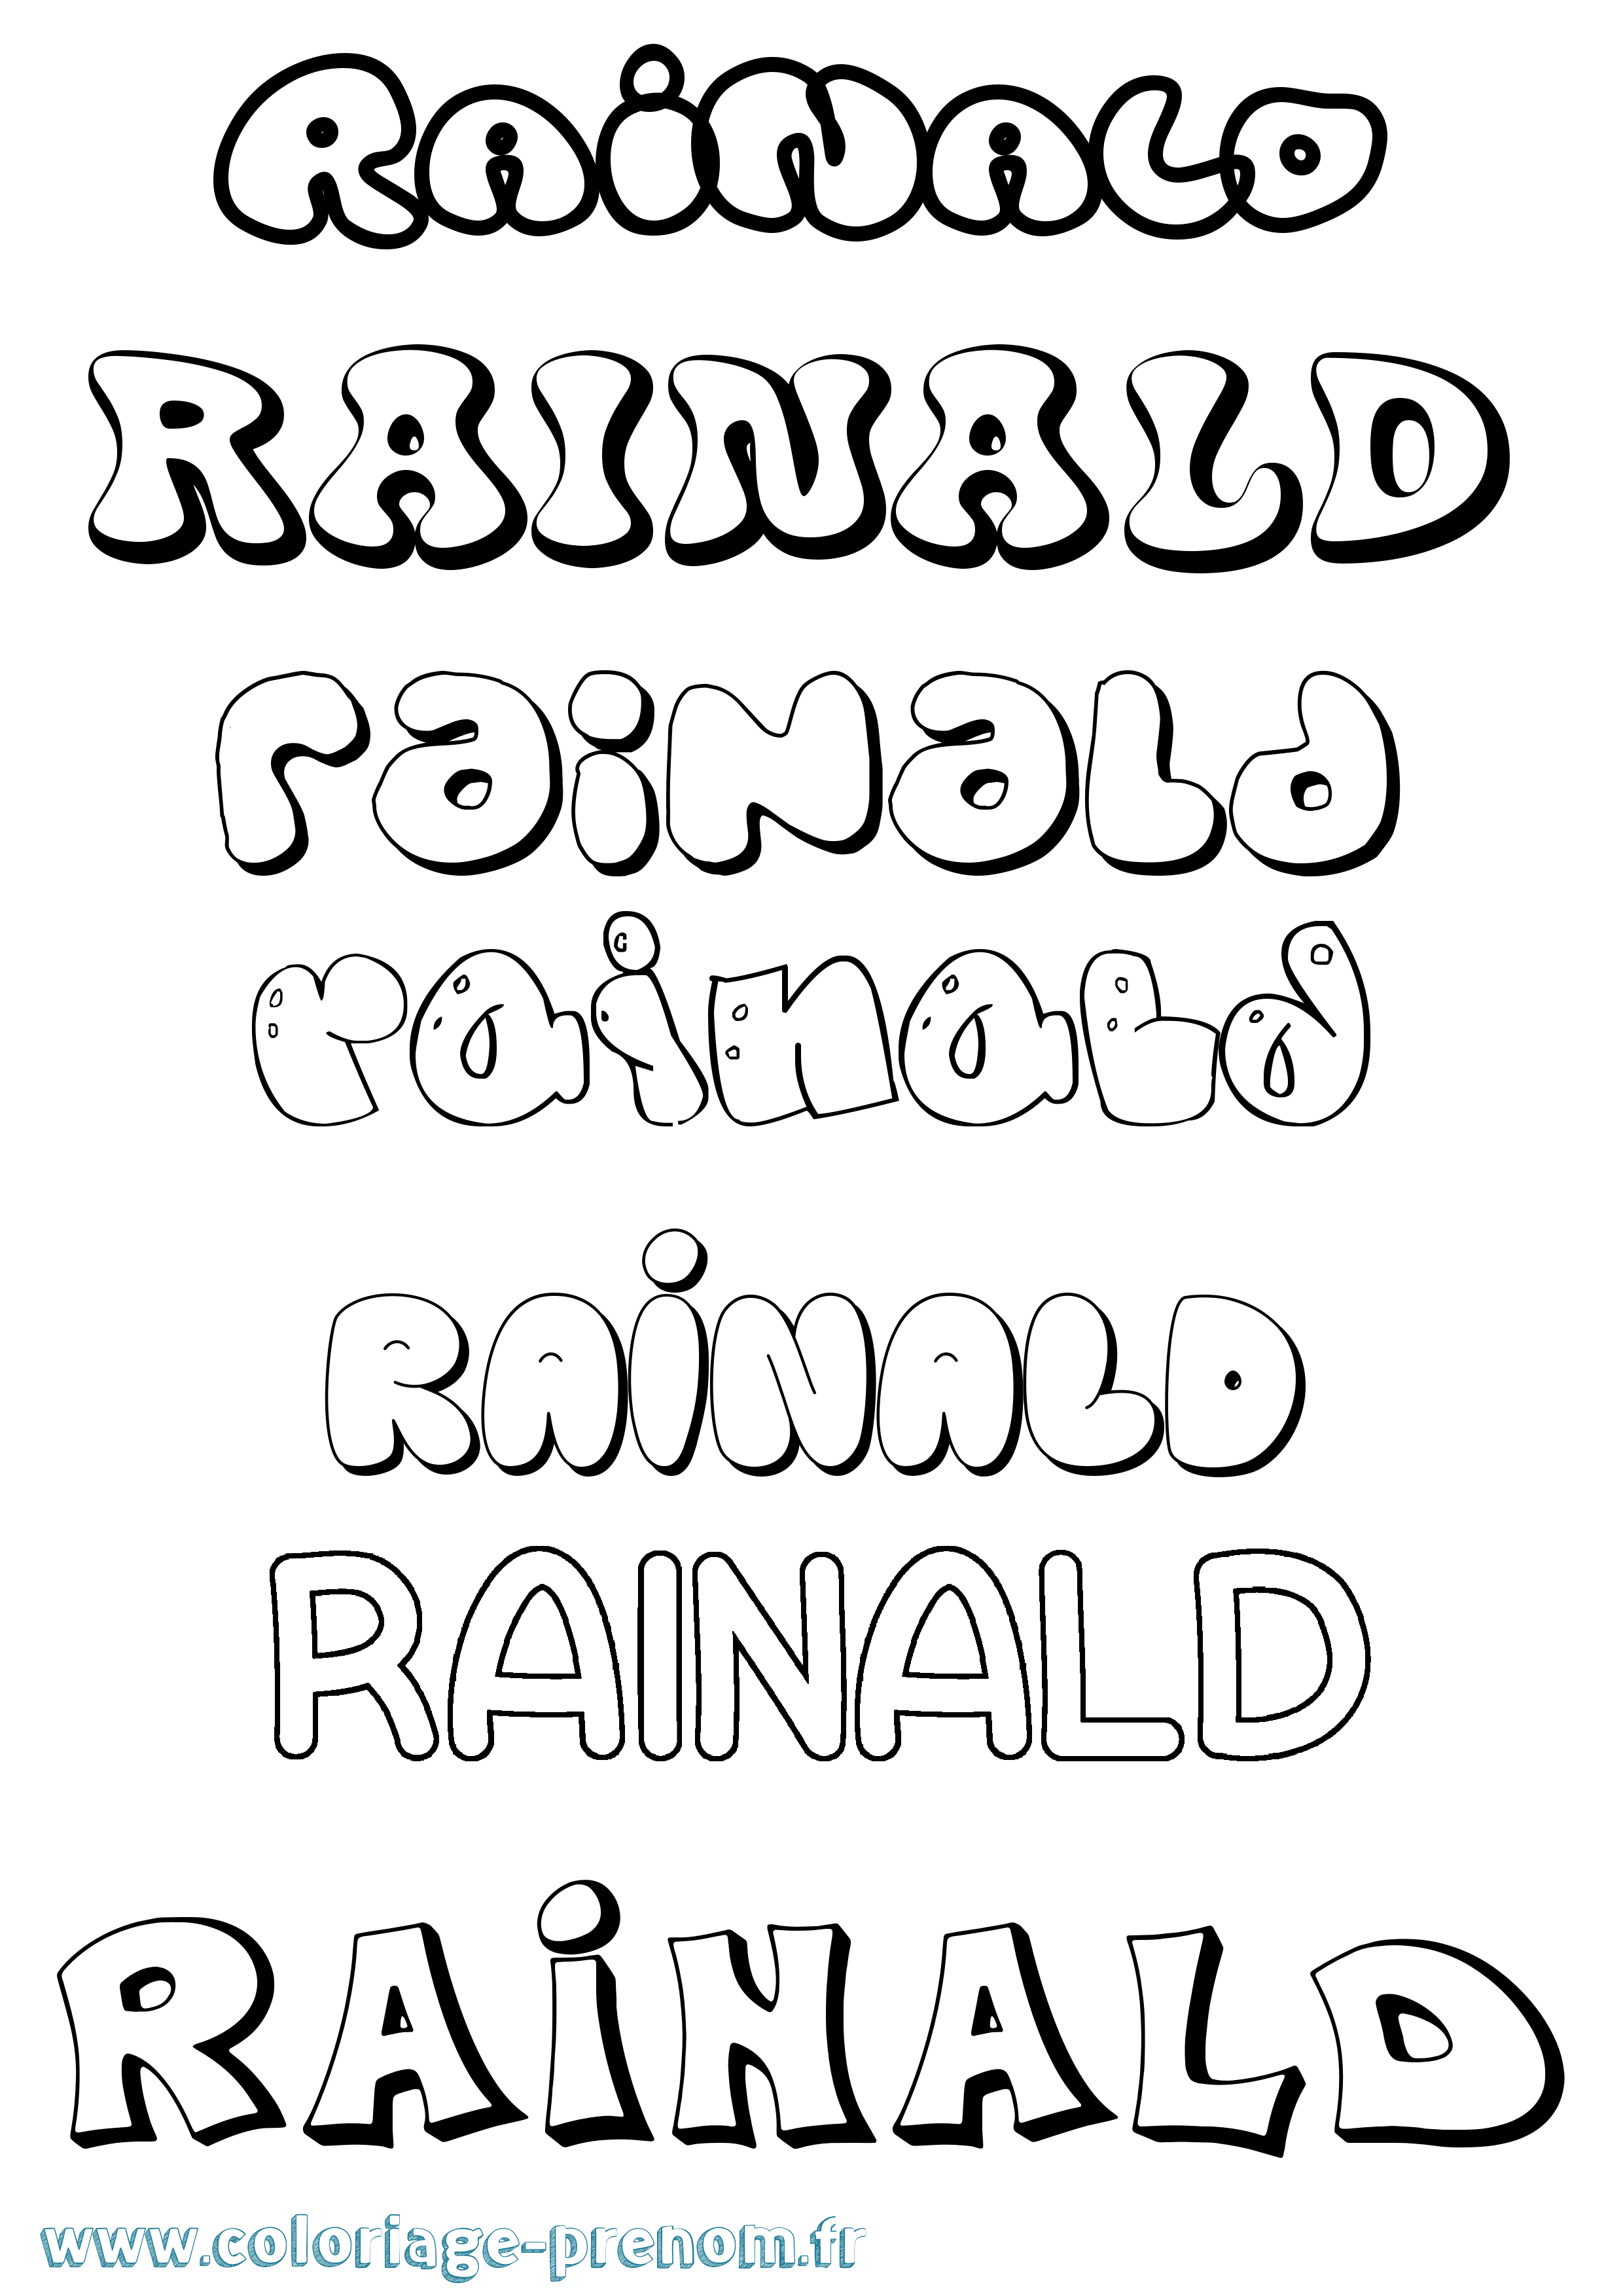 Coloriage prénom Rainald Bubble